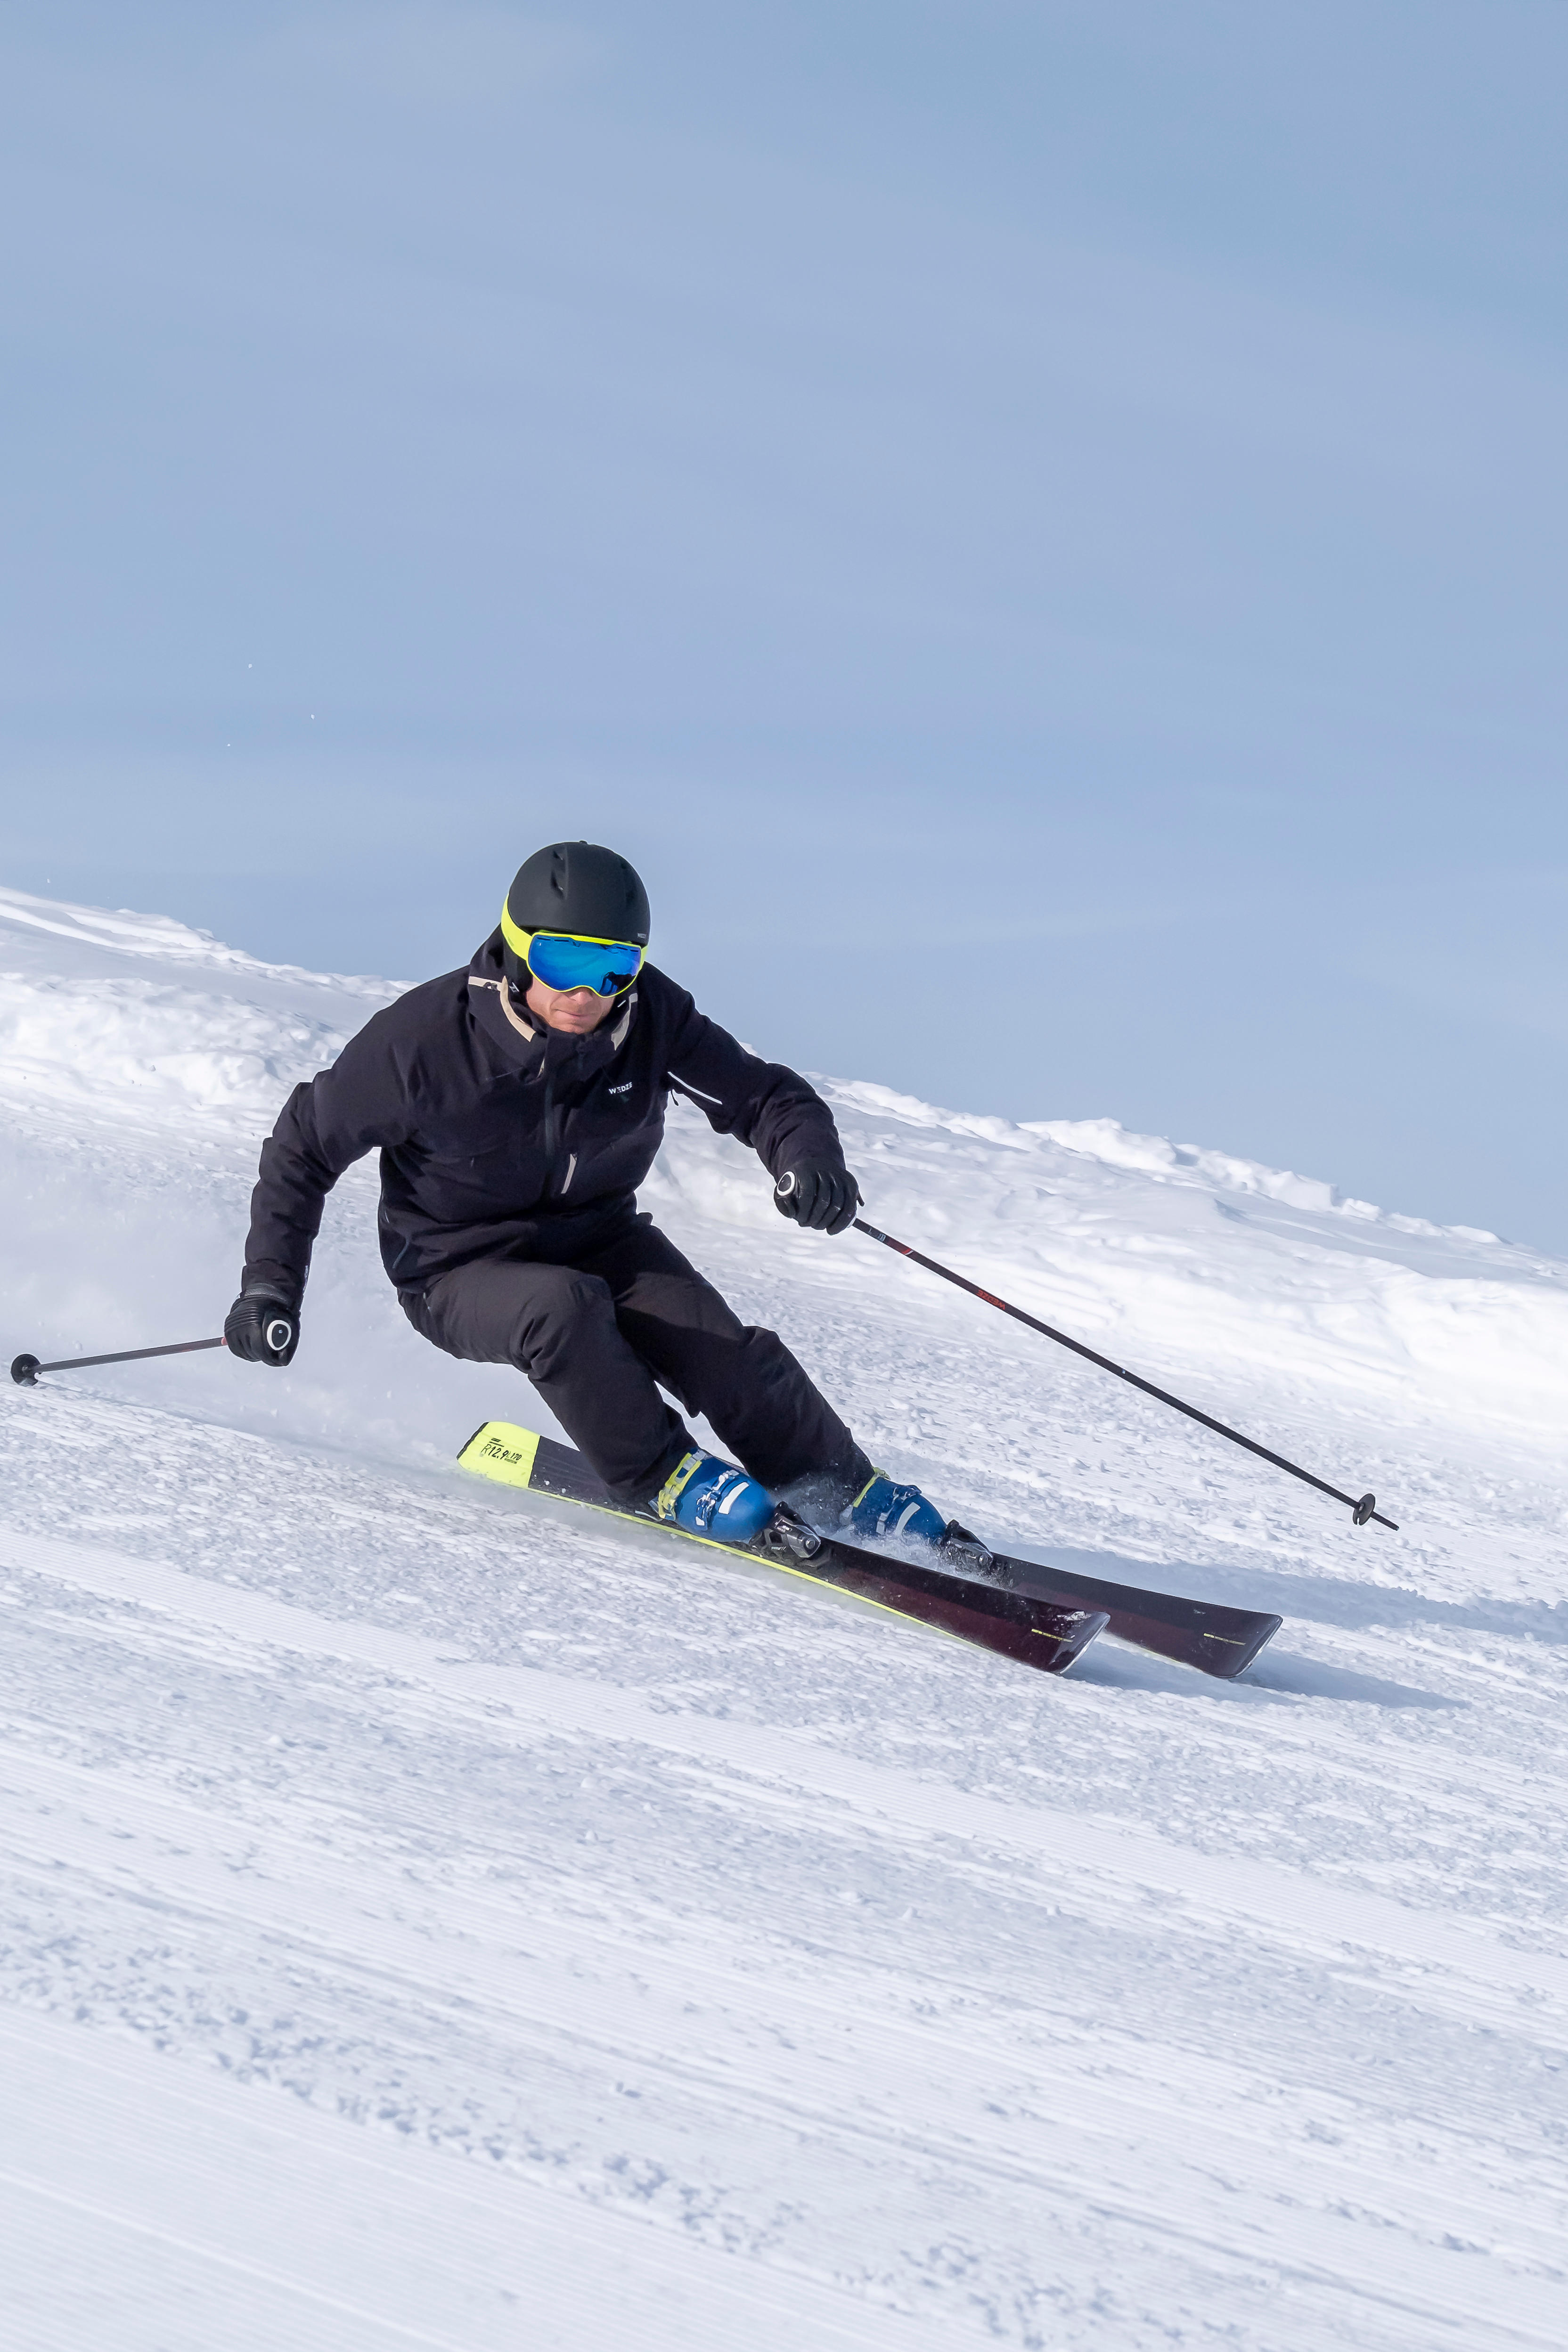 Manteau de ski et sous-manteau homme – 980 noir - WEDZE